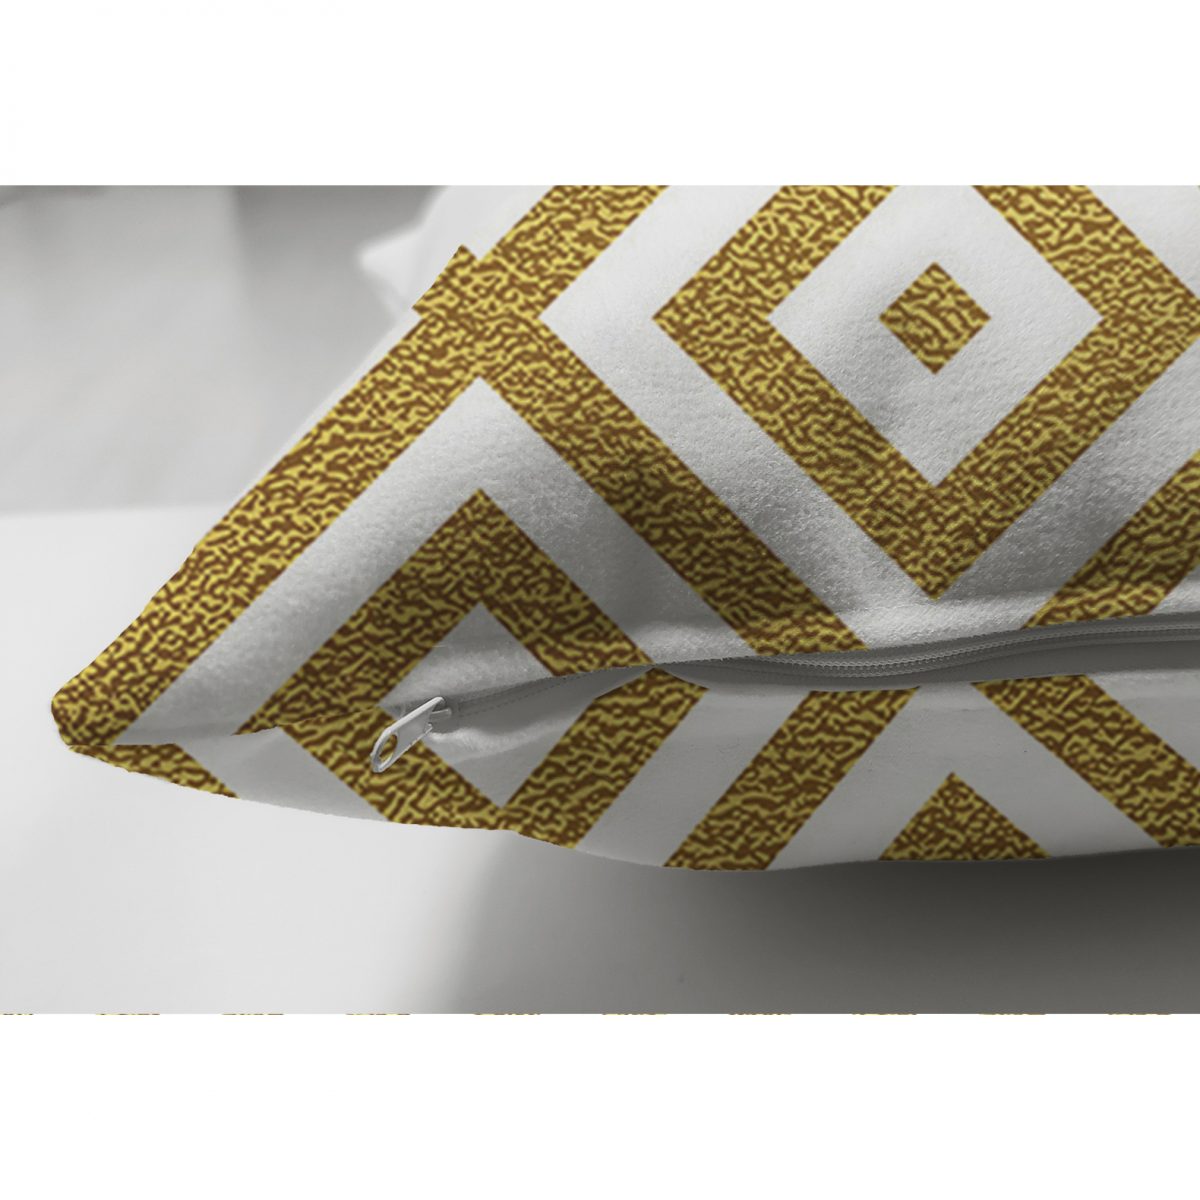 Altın Renkli Geometrik Desenli Çift Taraflı Özel Tasarım Süet Yastık Kırlent Kılıfı Realhomes